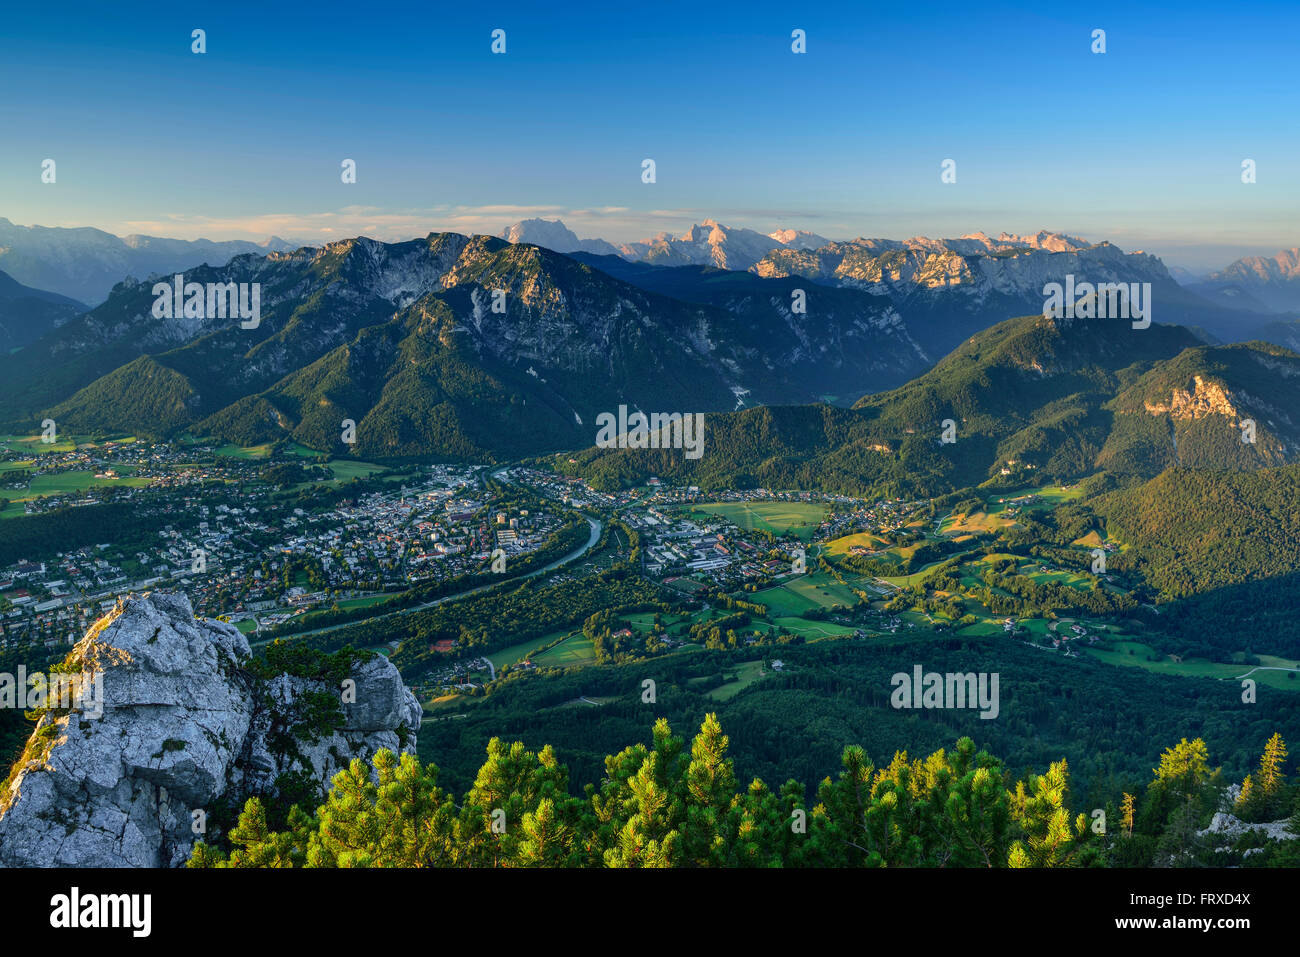 Blick vom Berg Hochstaufen über Tal von Bad Reichenhall, Chiemgauer Alpen, Chiemgau, Upper Bavaria, Bavaria, Germany Stockfoto